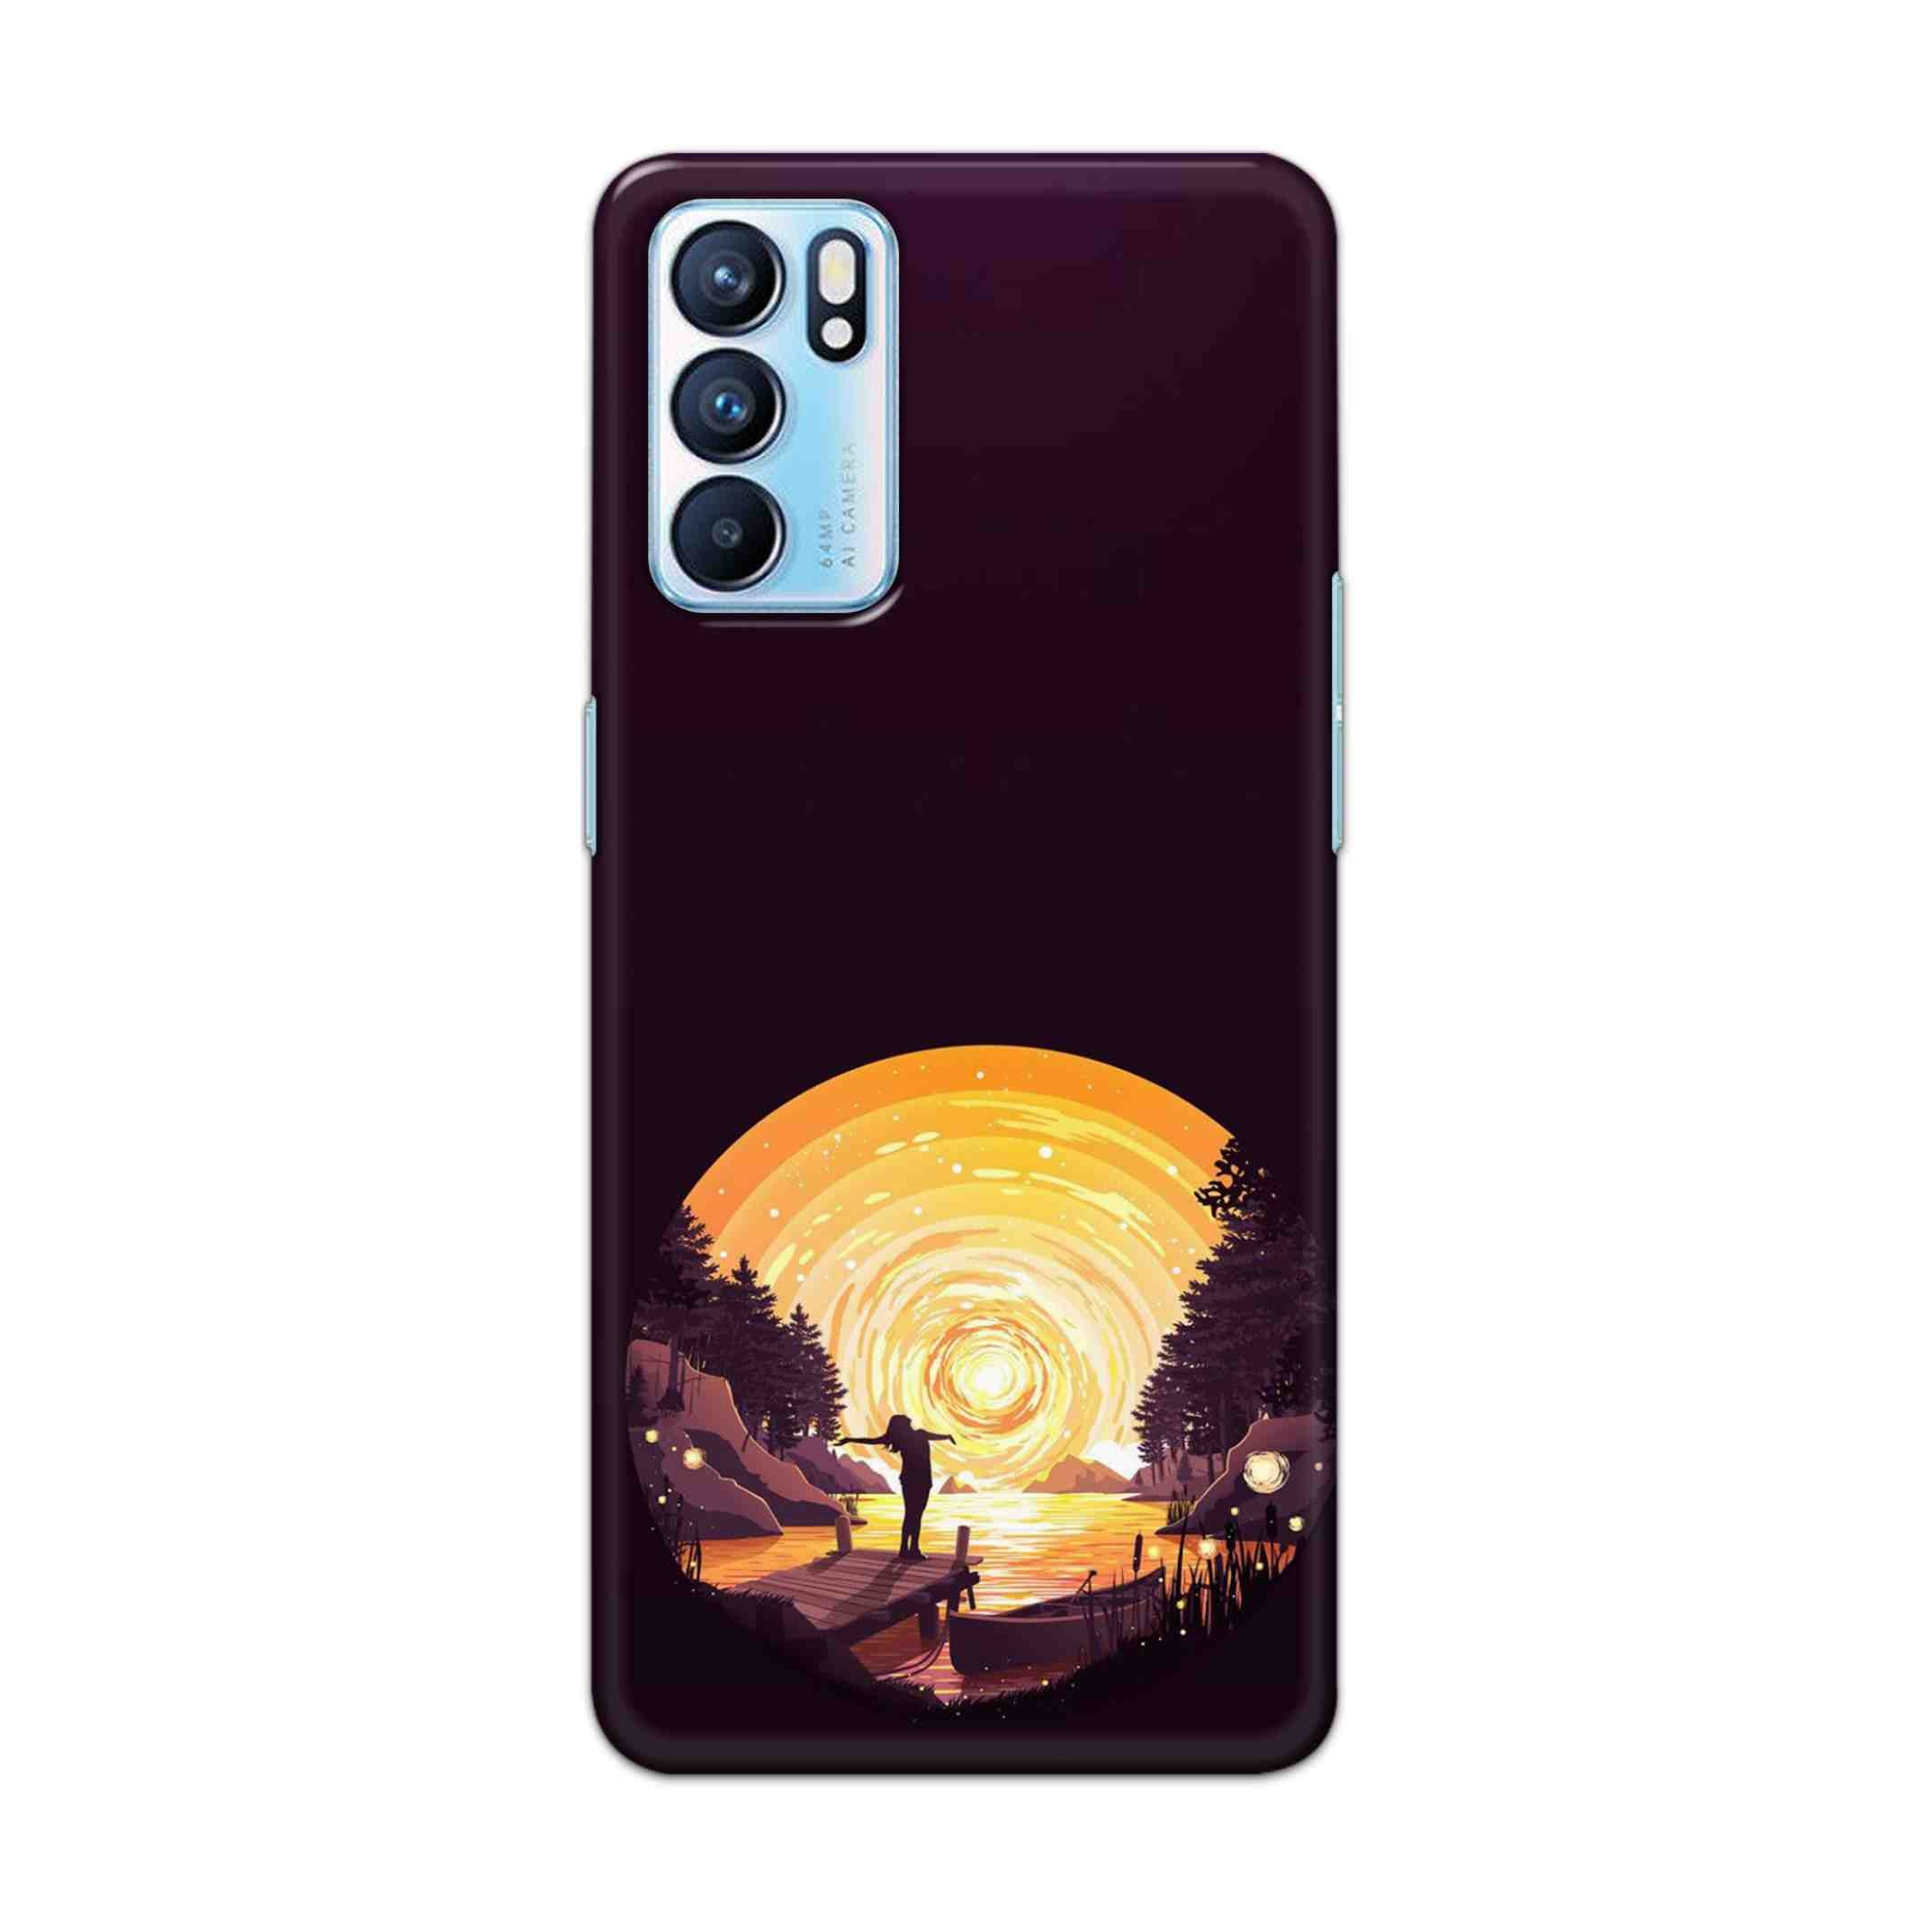 Buy Night Sunrise Hard Back Mobile Phone Case Cover For OPPO RENO 6 5G Online